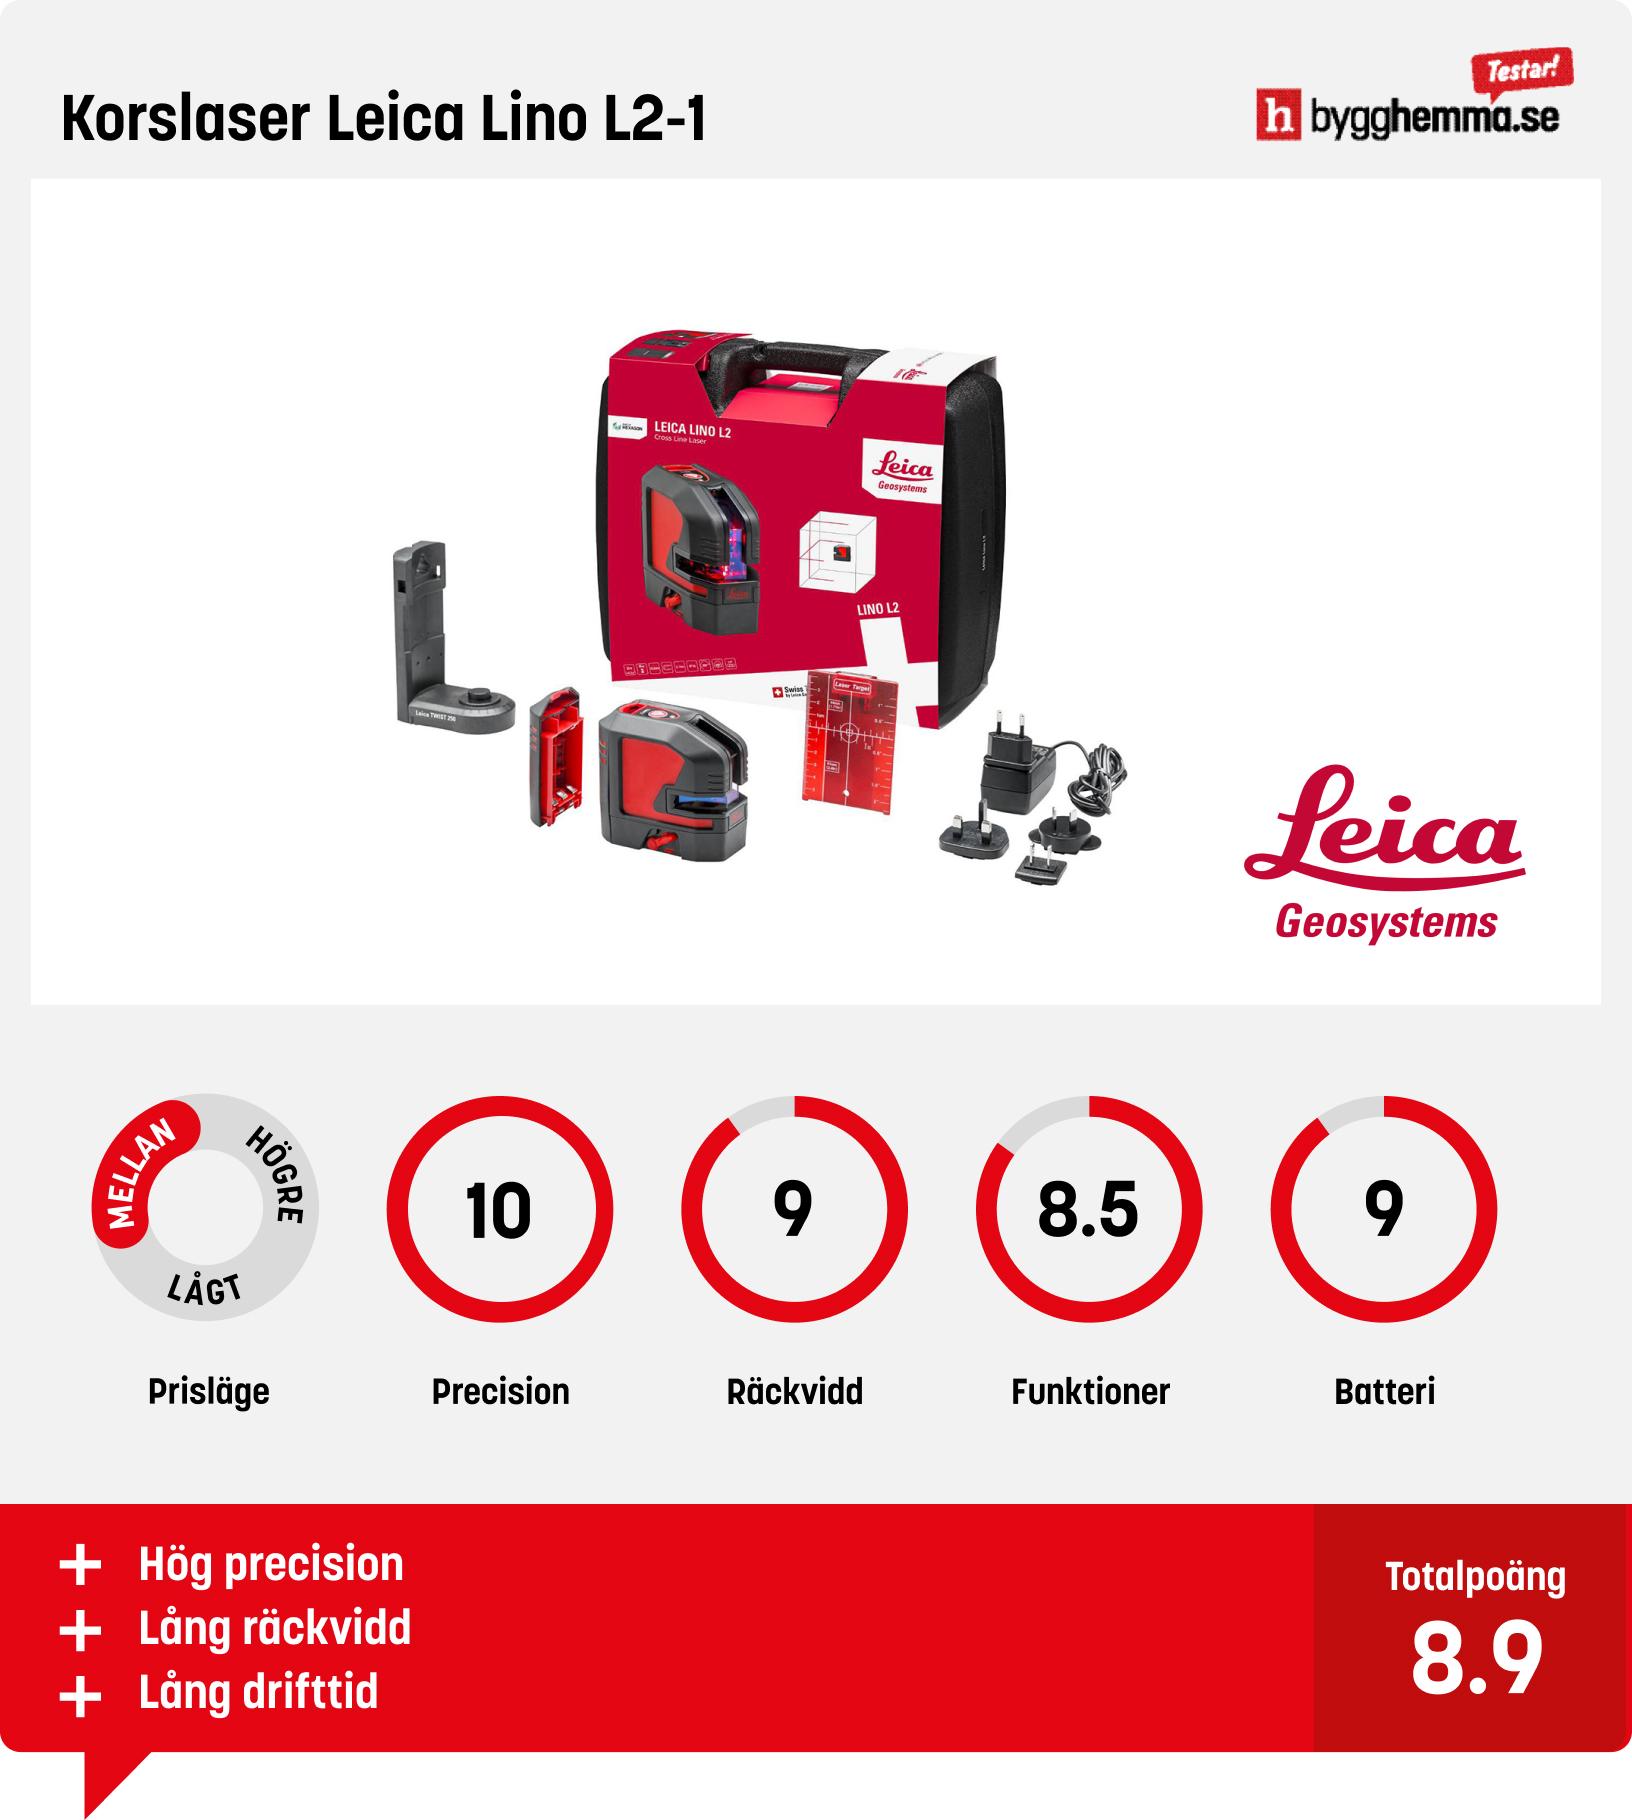 Krysslaser test - Korslaser Leica Lino L2-1